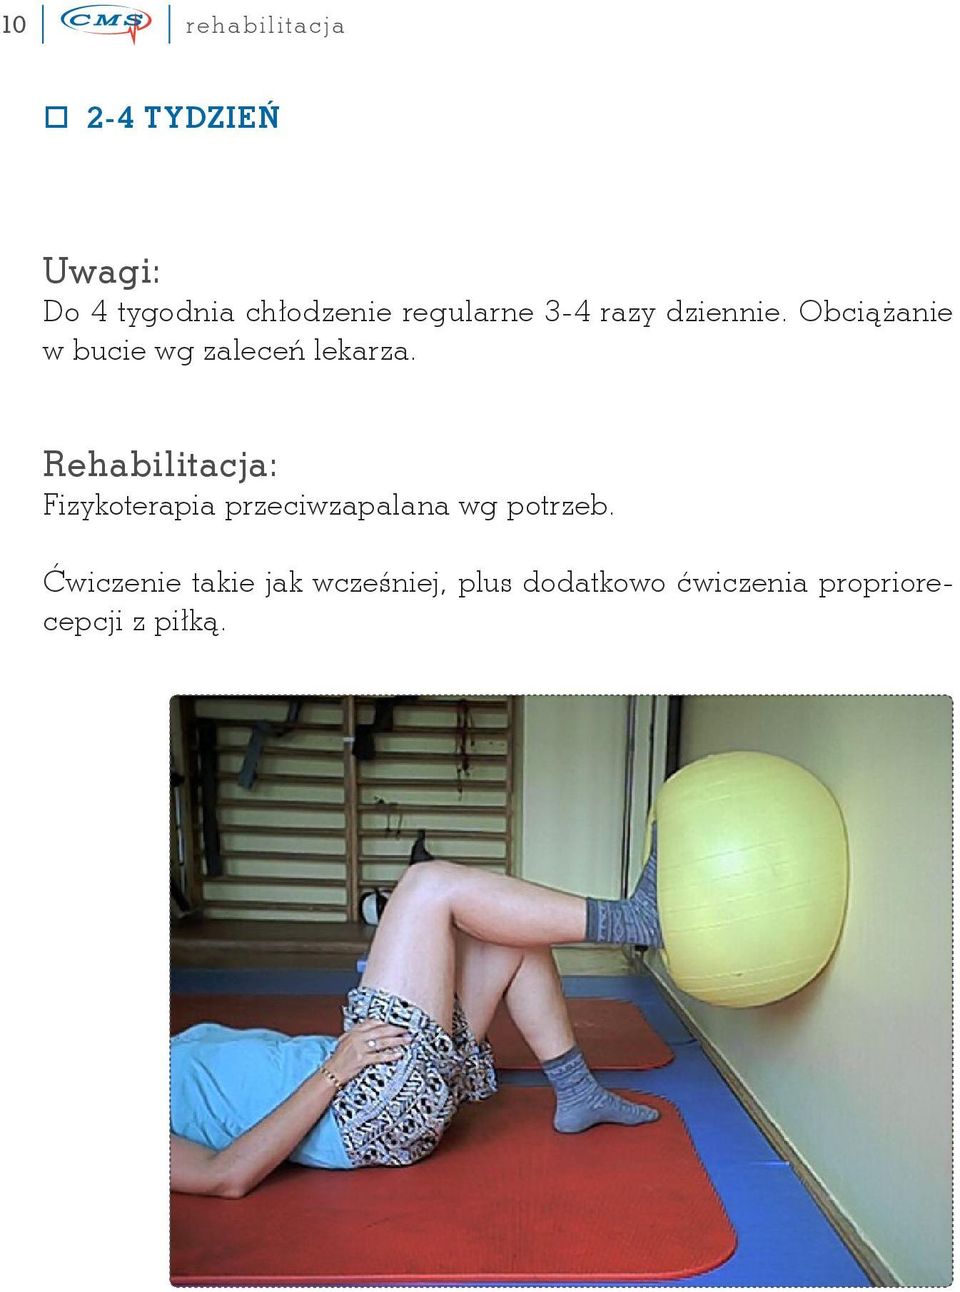 Rehabilitacja: Fizykoterapia przeciwzapalana wg potrzeb.